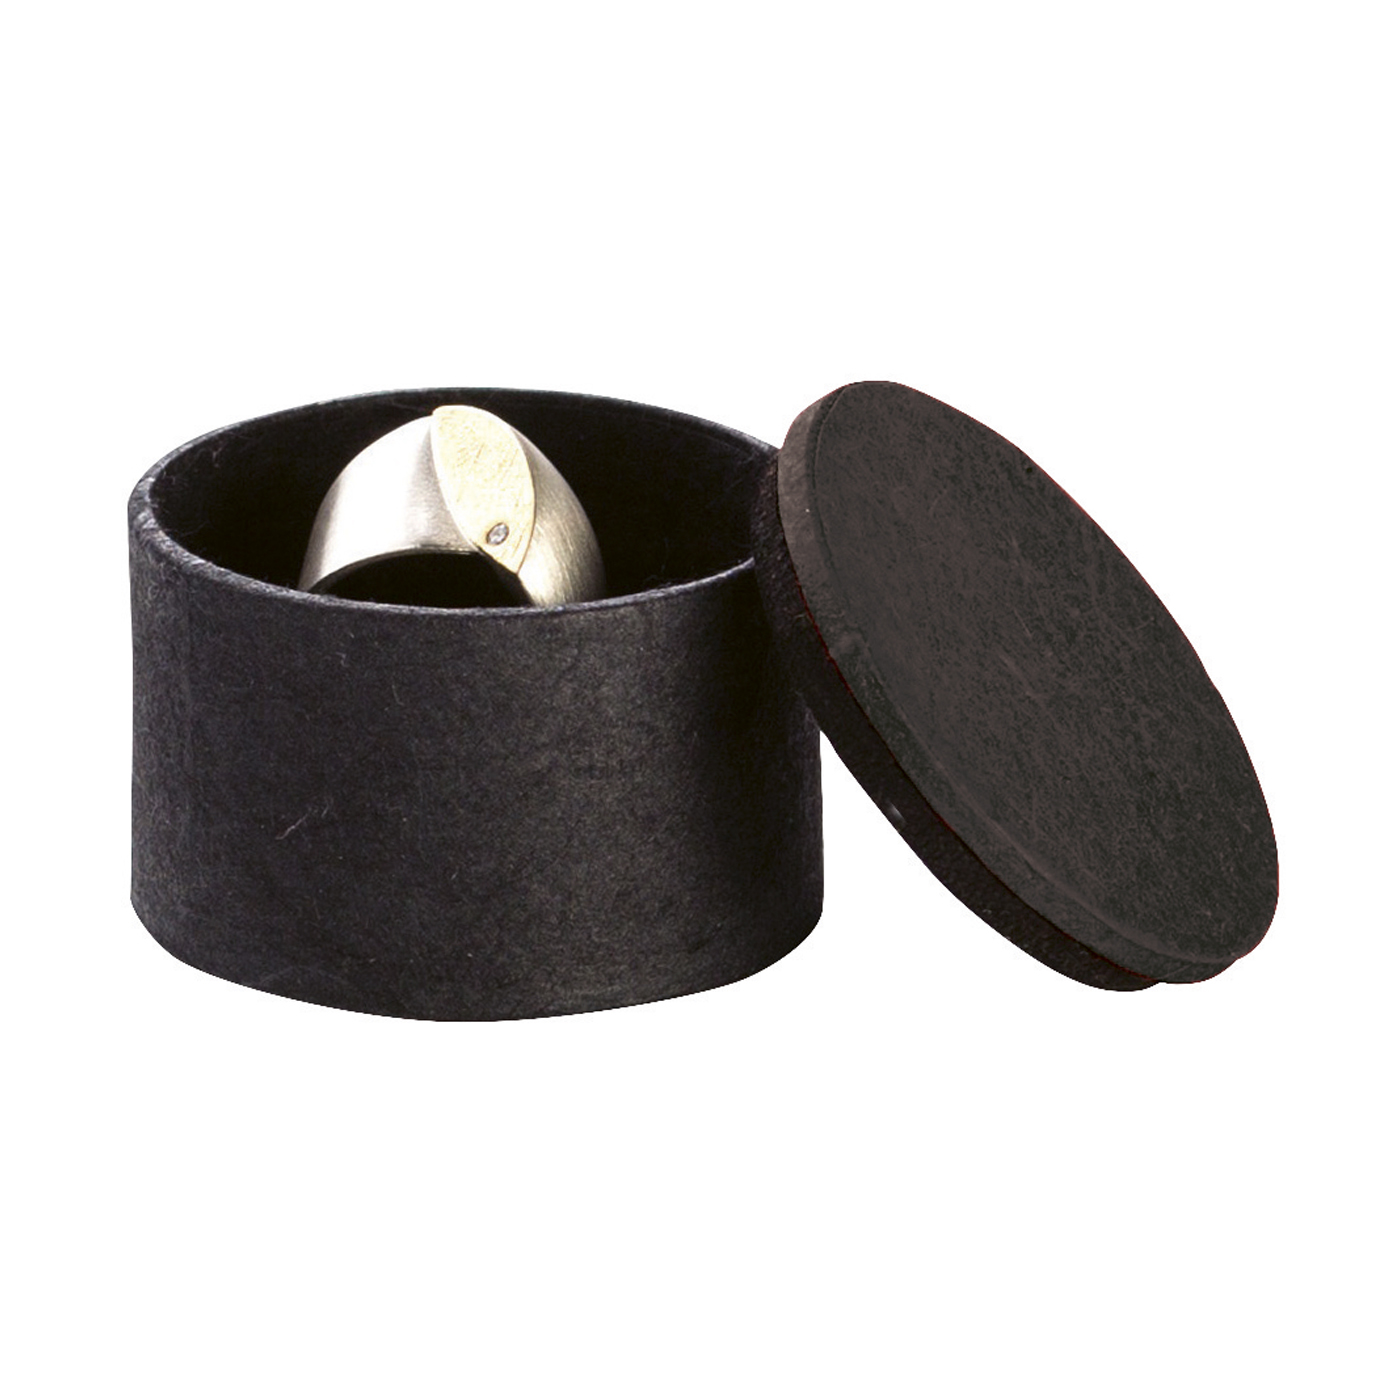 Jewellery Packagings "Puk", Black, ø 40 x 35 mm - 10 pieces